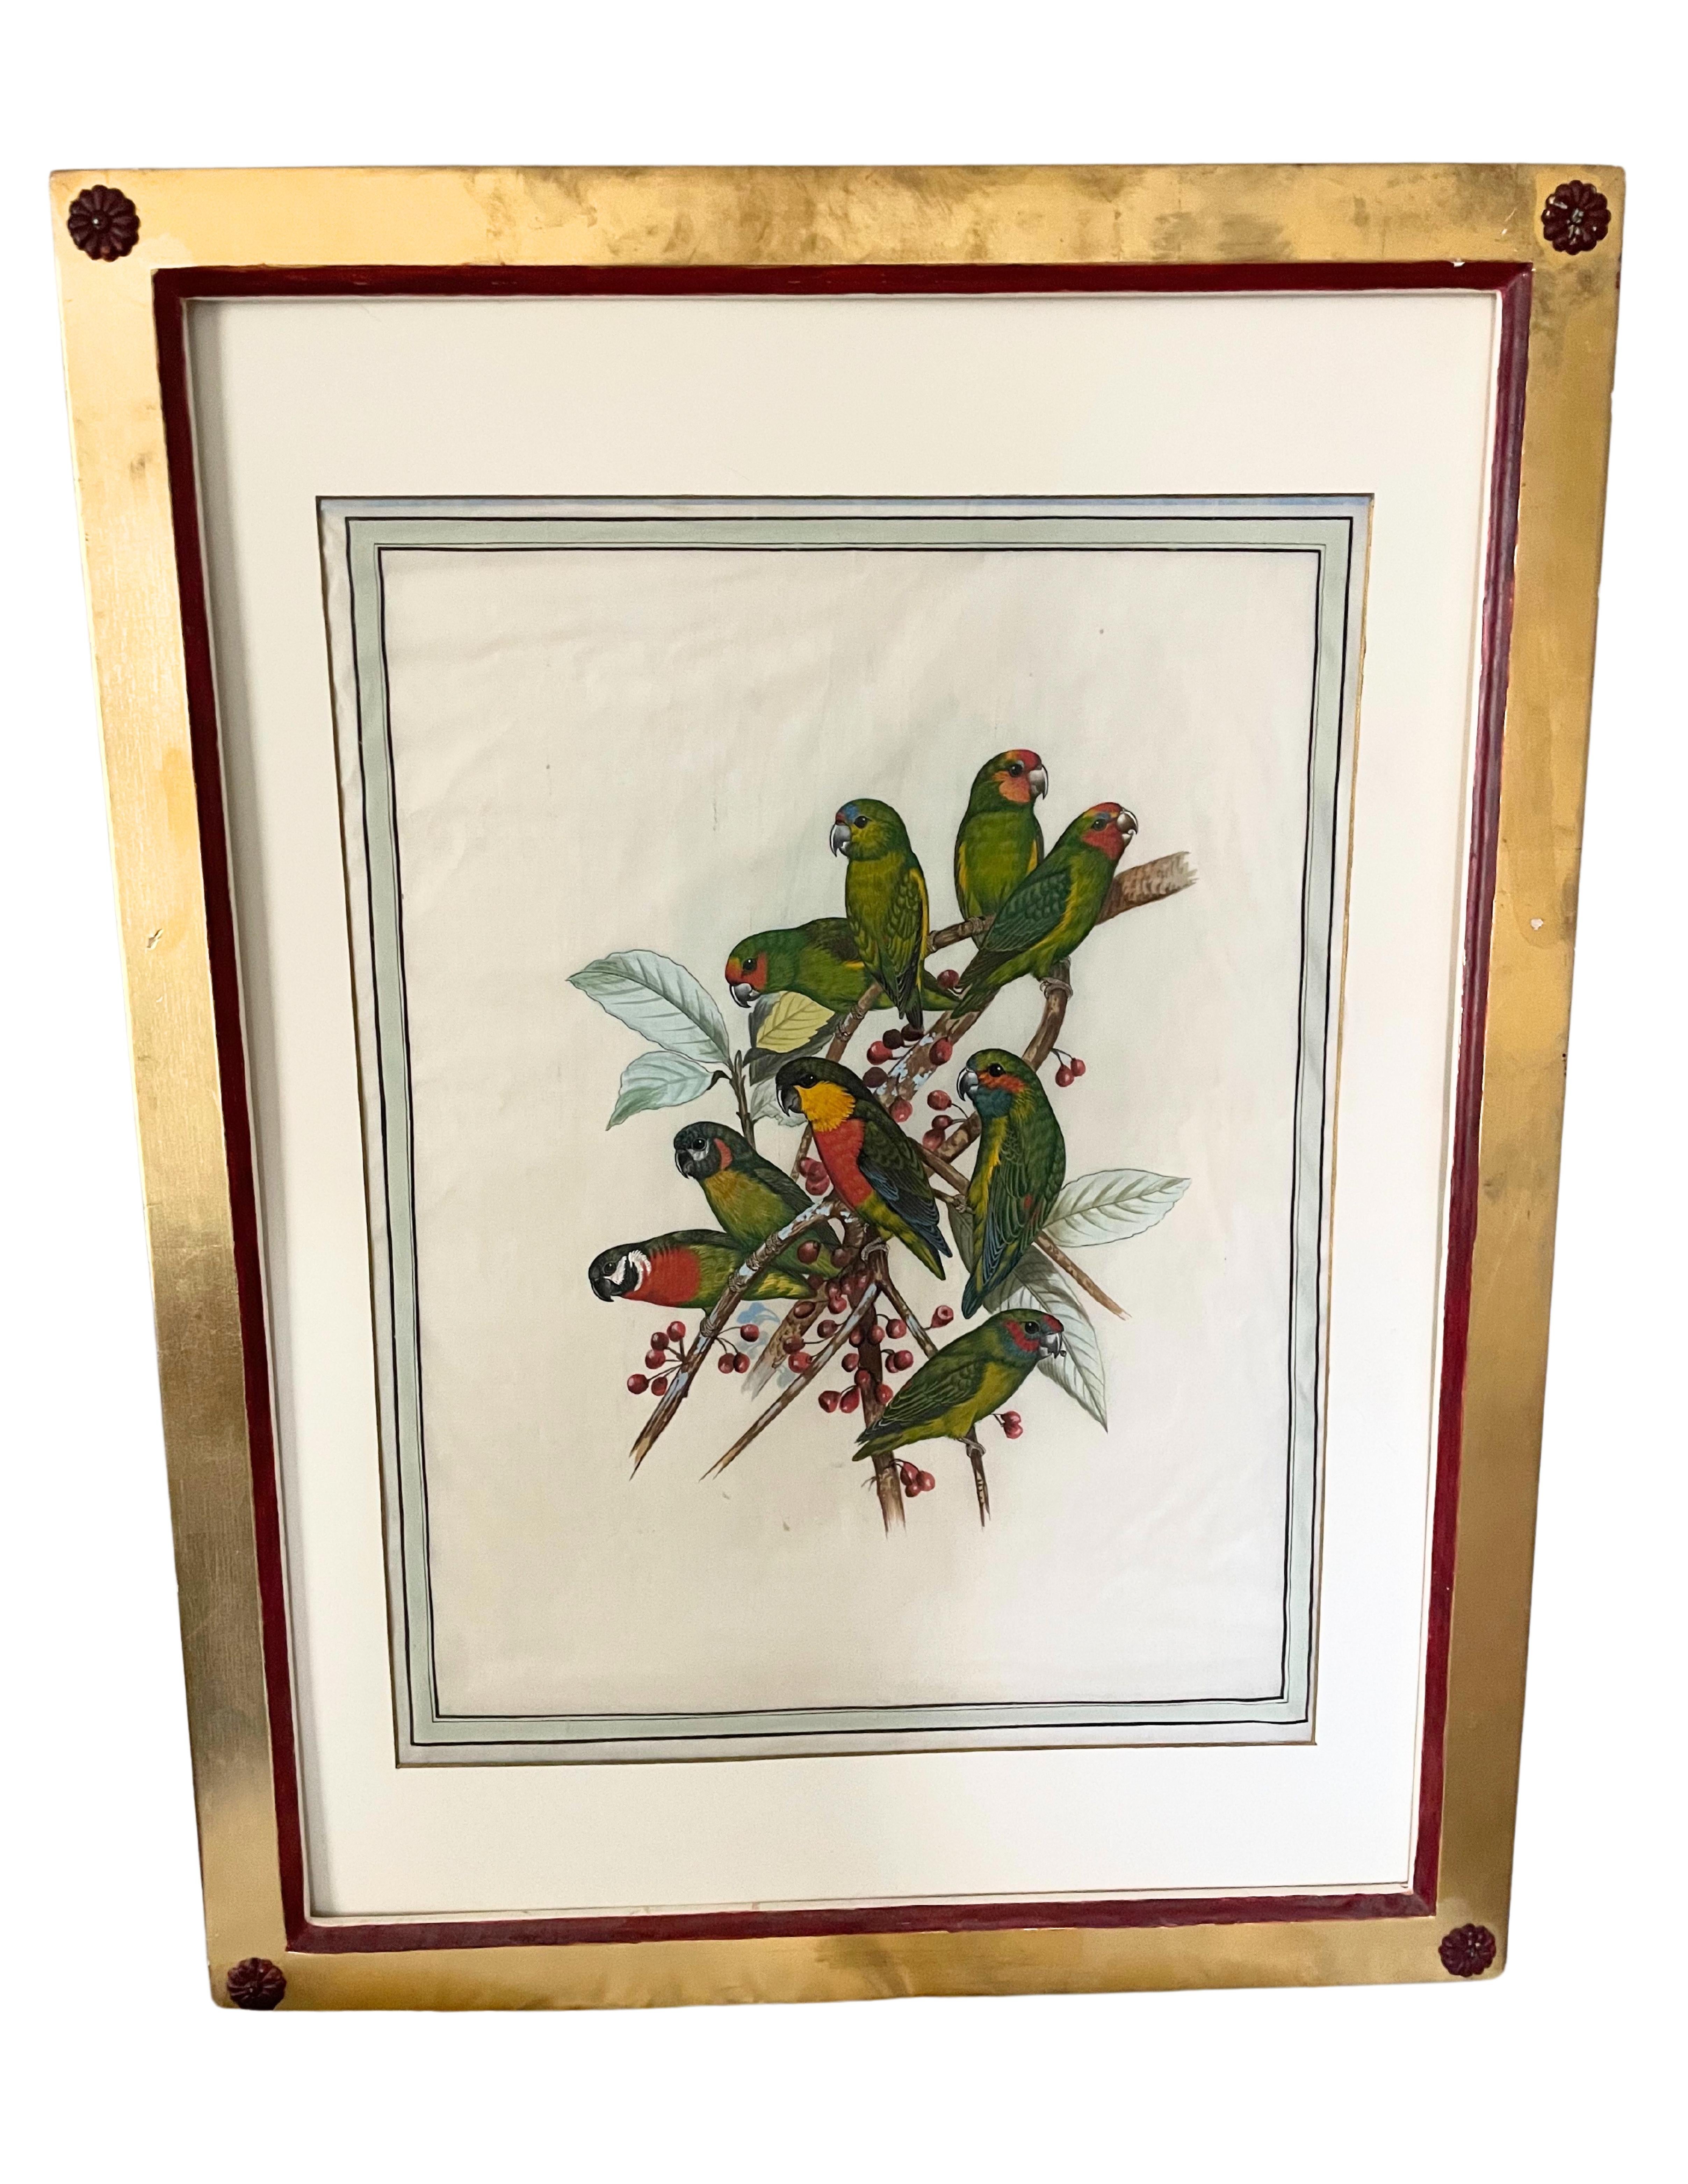 Gravures anciennes d'oiseaux
Études d'histoire naturelle des perroquets et des oiseaux tropicaux
Gravures coloriées à la main
23.5 x 30.5  pouces chacun, y compris le cadre

Imaginez les 18 sur un seul mur de votre bureau. 
